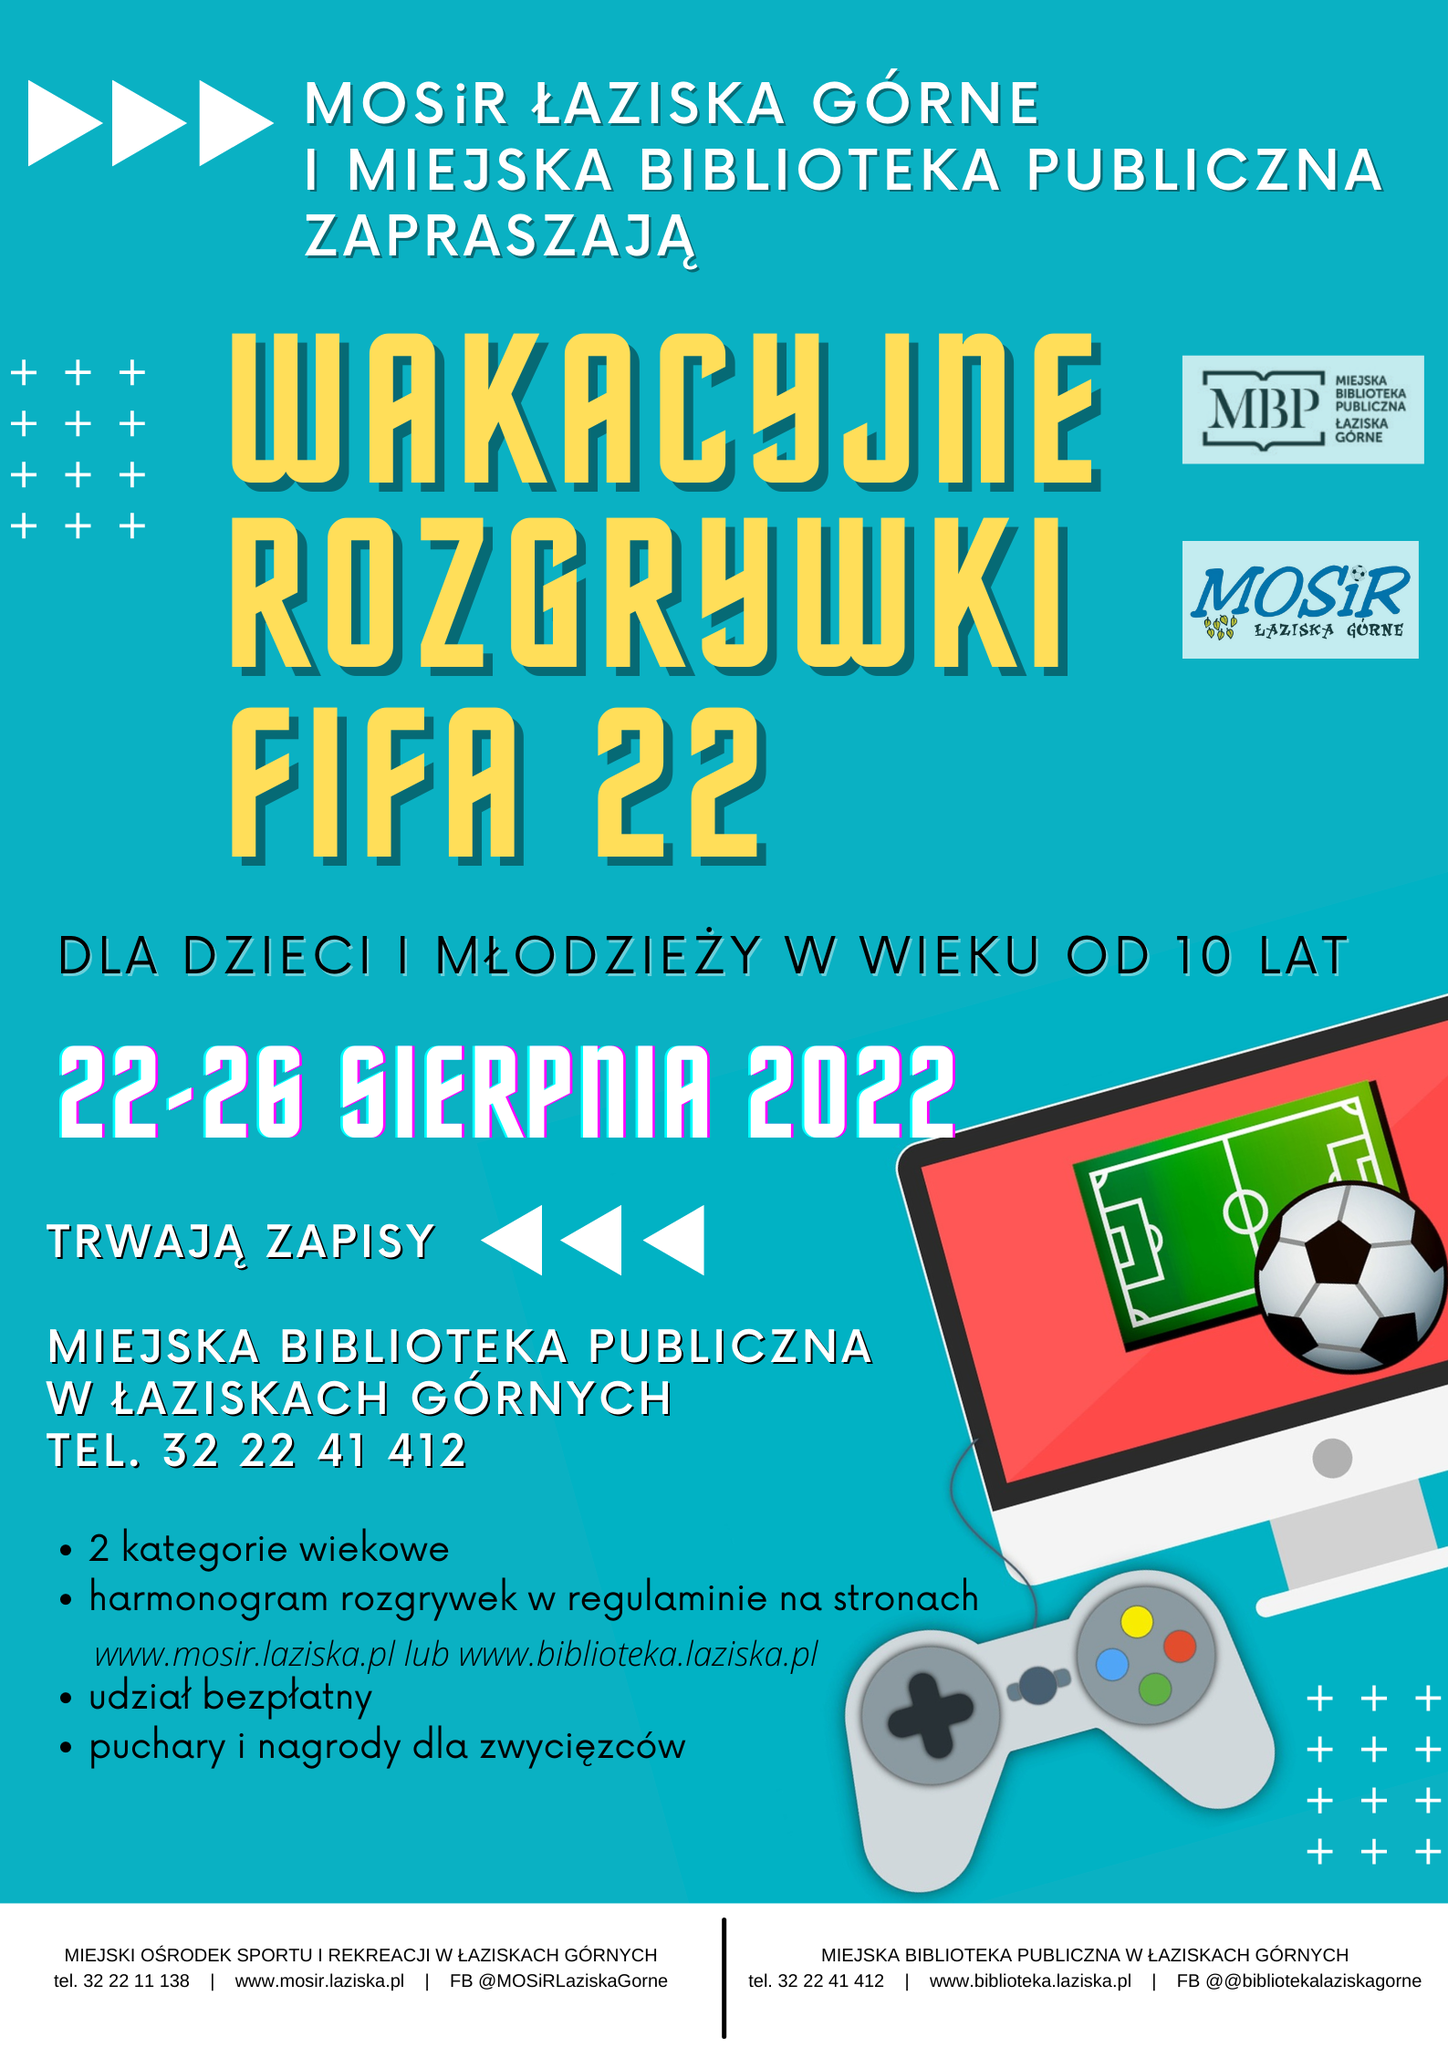 Wakacyjne rozgrywki Fifa22 - informacja o wydarzeniu